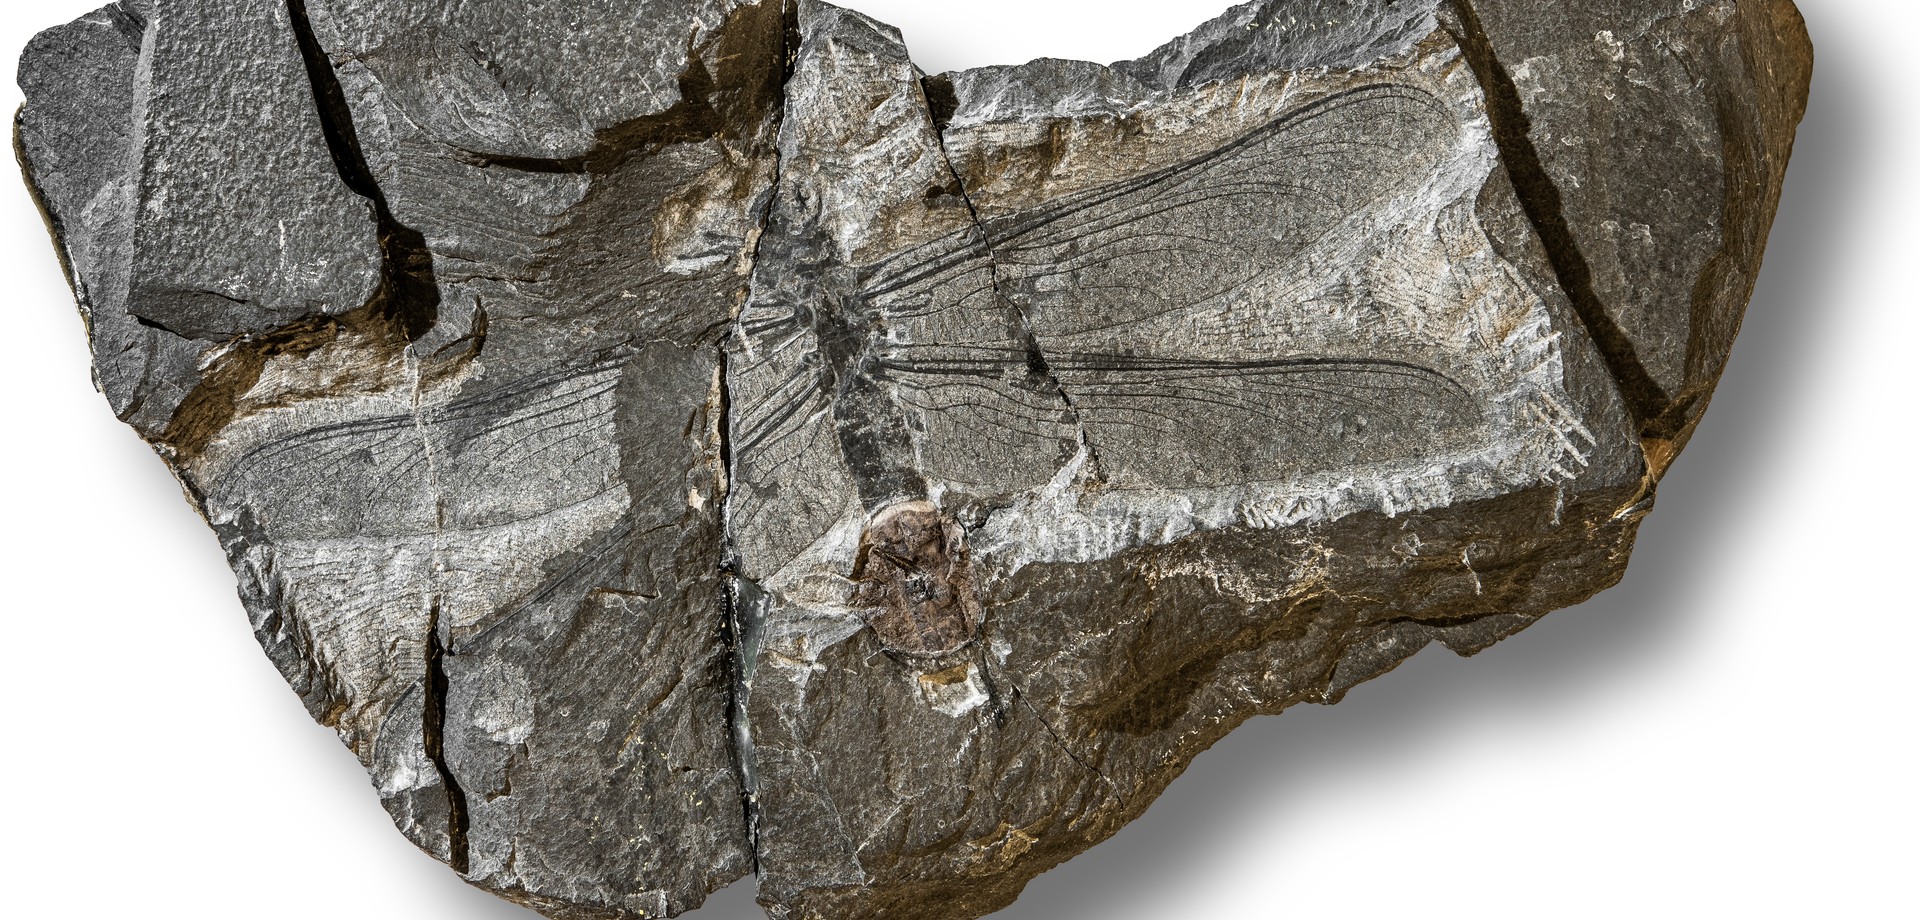 Fossiles Fluginsekt aus dem Karbon von Hagen Vorhalle